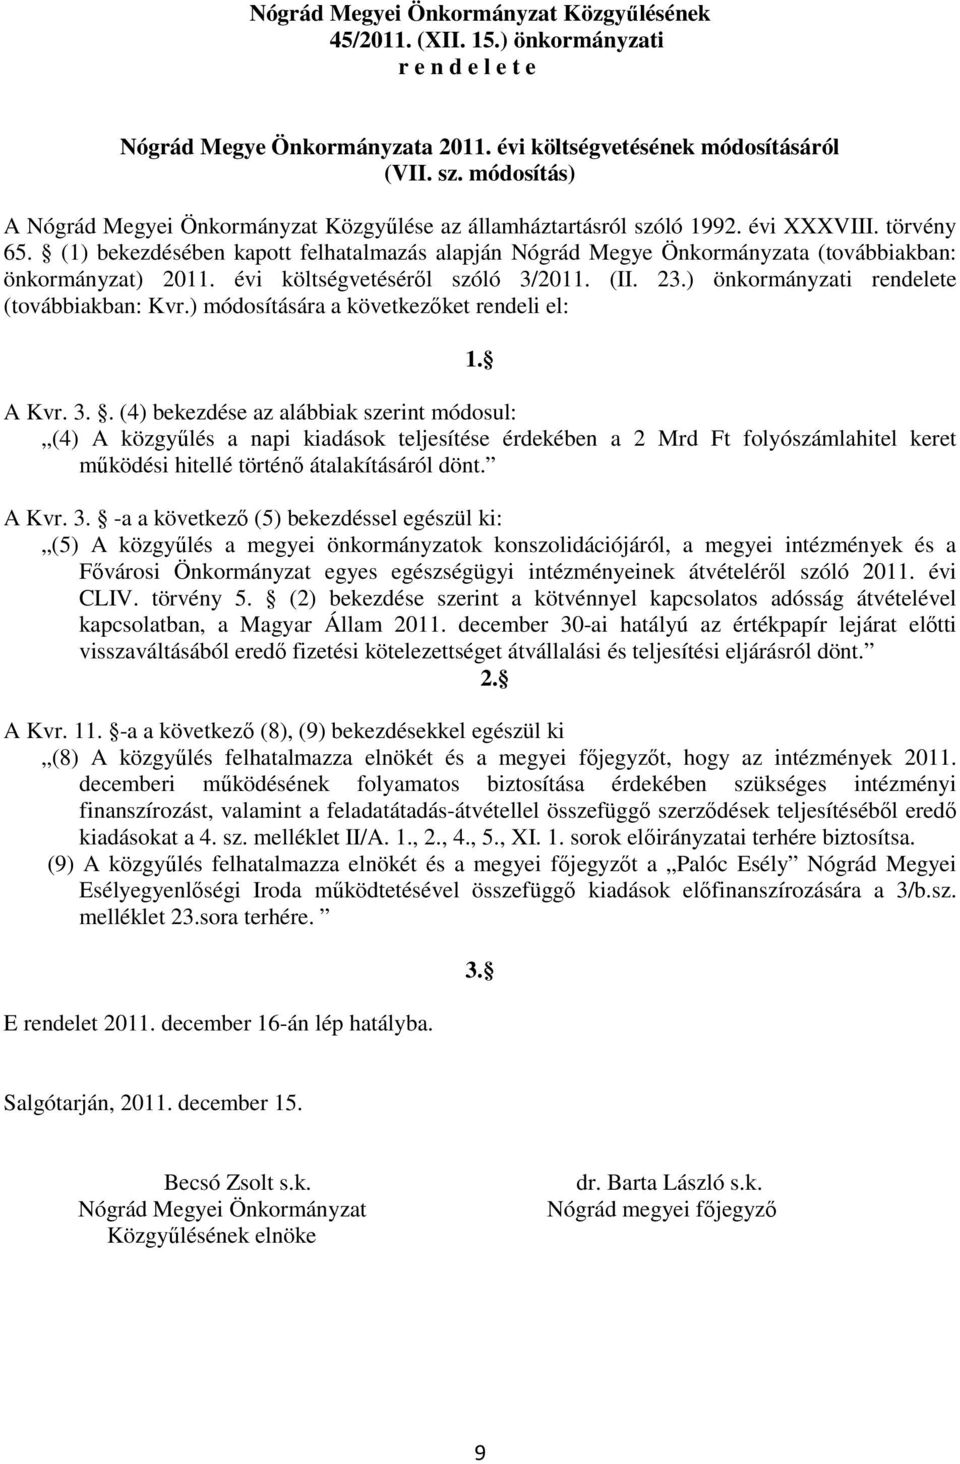 (1) bekezdésében kapott felhatalmazás alapján Nógrád Megye Önkormányzata (továbbiakban: önkormányzat) 2011. évi költségvetéséről szóló 3/2011. (II. 23.) önkormányzati rendelete (továbbiakban: Kvr.